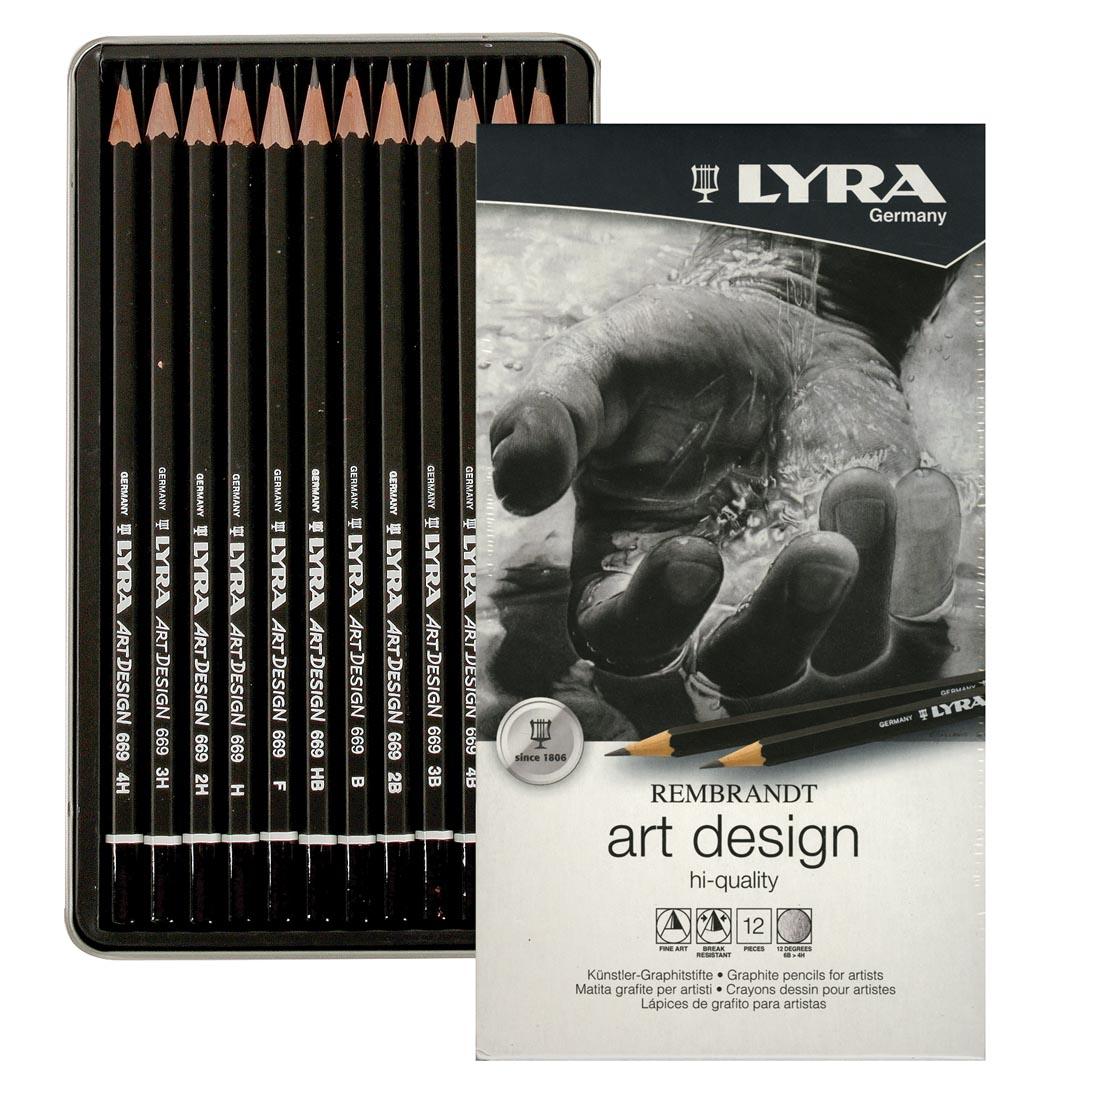 LYRA Rembrandt Art Design Pencils